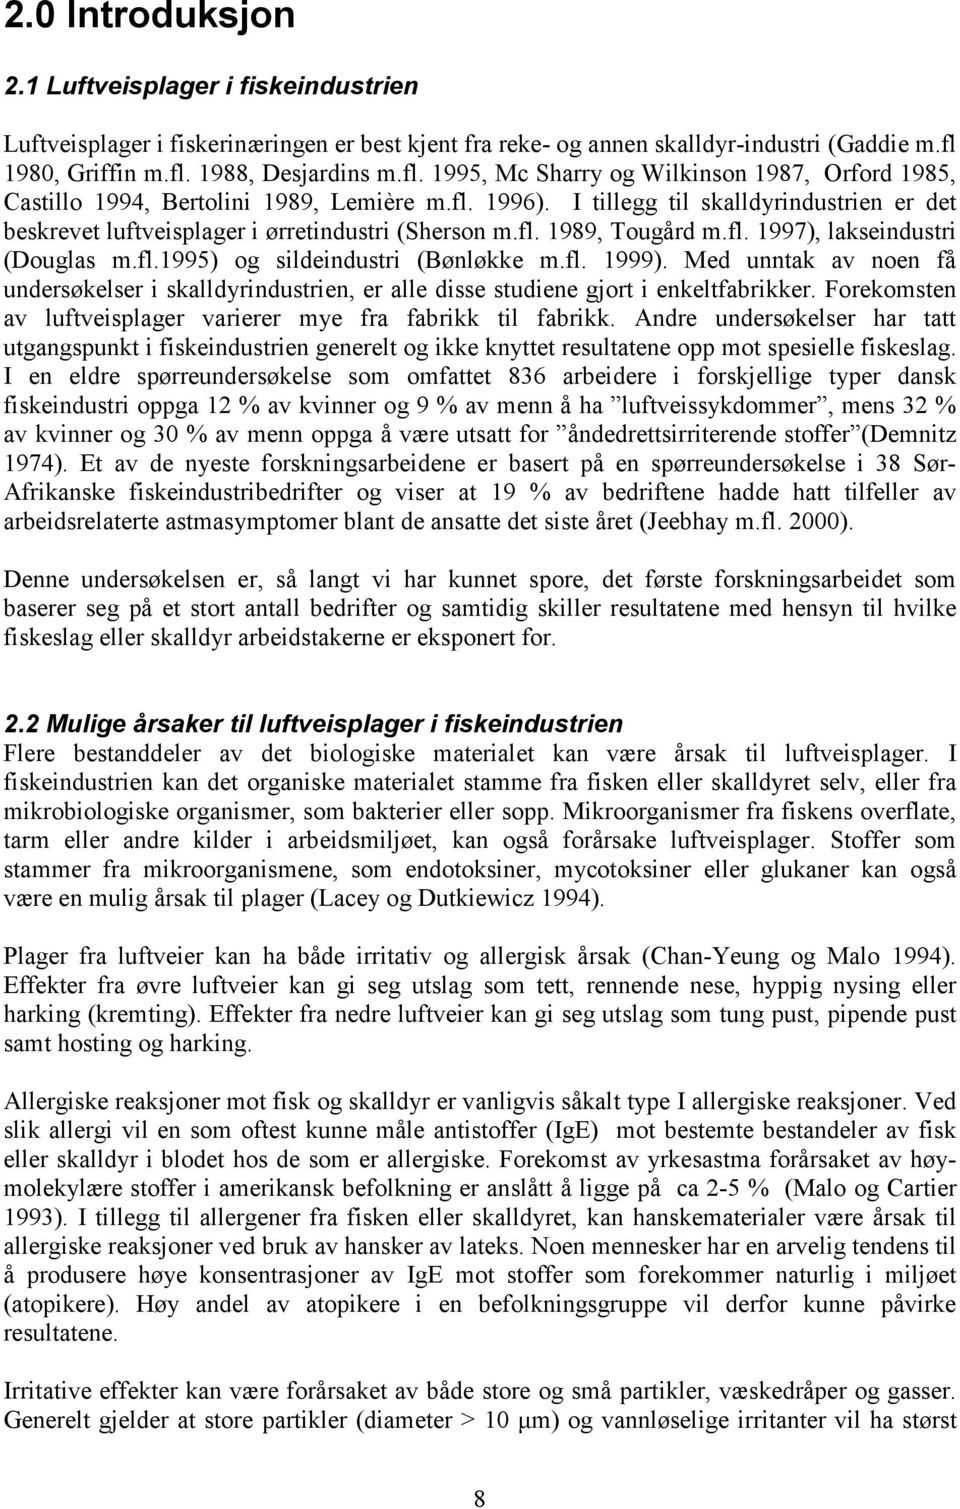 I tillegg til skalldyrindustrien er det beskrevet luftveisplager i ørretindustri (Sherson m.fl. 1989, Tougård m.fl. 1997), lakseindustri (Douglas m.fl.1995) og sildeindustri (Bønløkke m.fl. 1999).